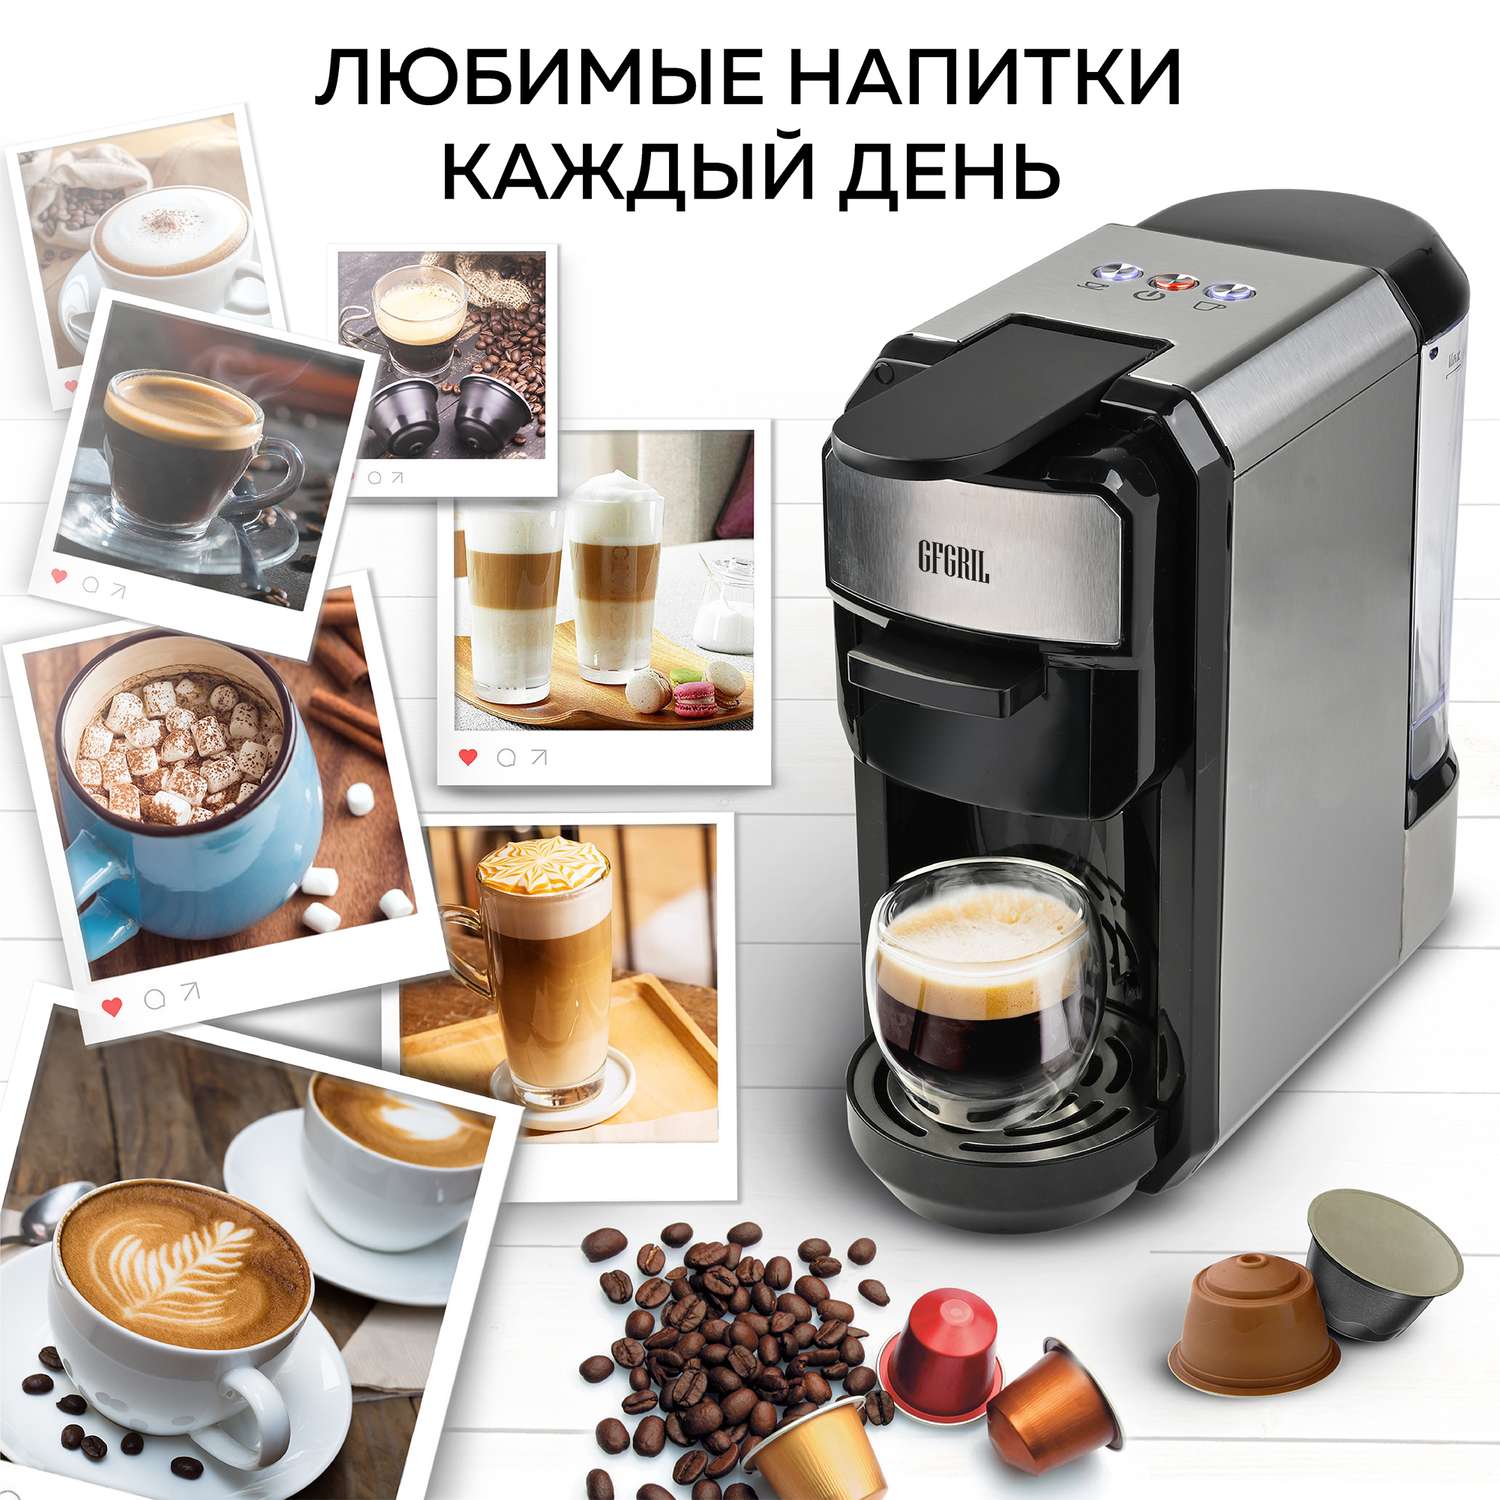 Кофеварка GFGRIL Мультикапсульная 3 в 1 GFC-C300 для молотого кофе и капсул типа Nespresso и Dolce Gusto - фото 8